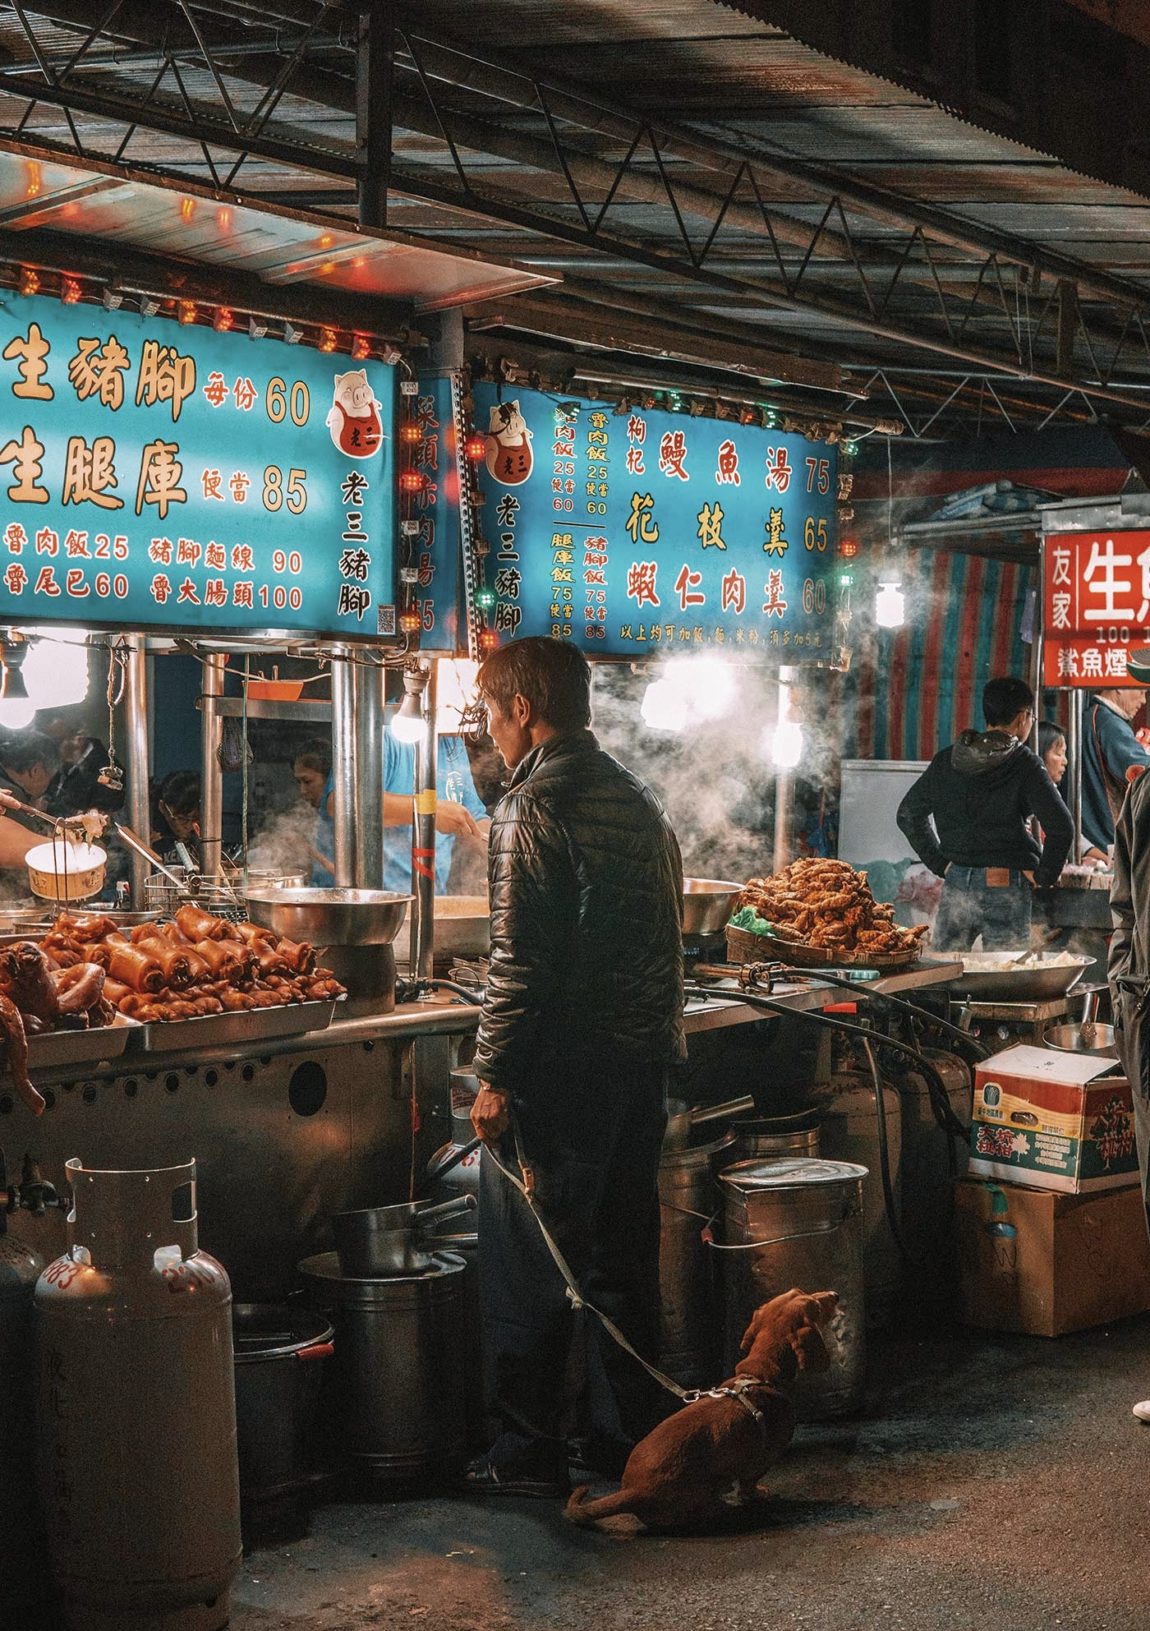 Taiwan's night markets - a photo essay - CK Travels